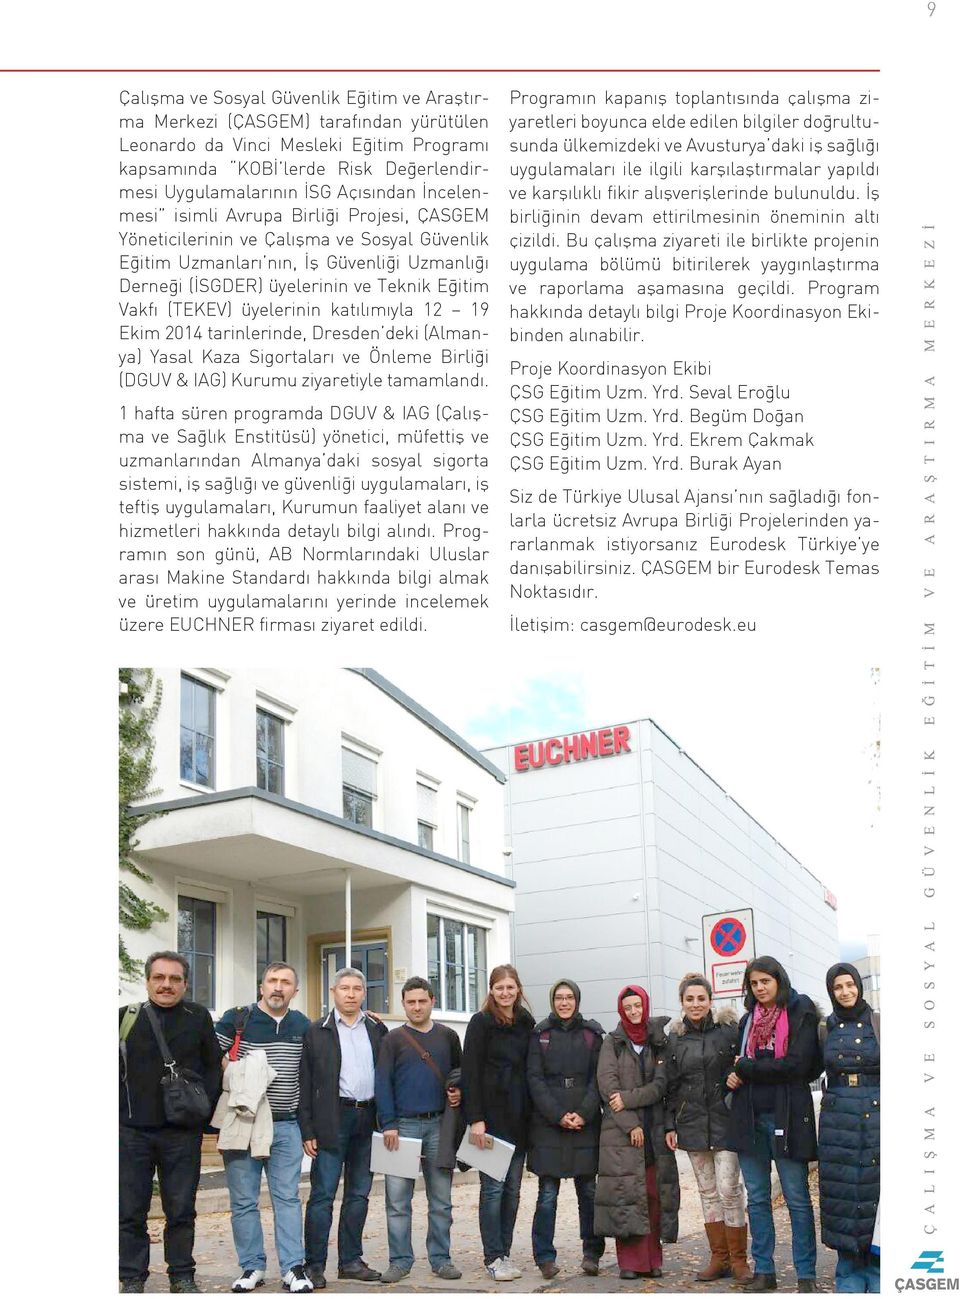 Vakfı (TEKEV) üyelerinin katılımıyla 12 19 Ekim 2014 tarinlerinde, Dresden deki (Almanya) Yasal Kaza Sigortaları ve Önleme Birliği (DGUV & IAG) Kurumu ziyaretiyle tamamlandı.